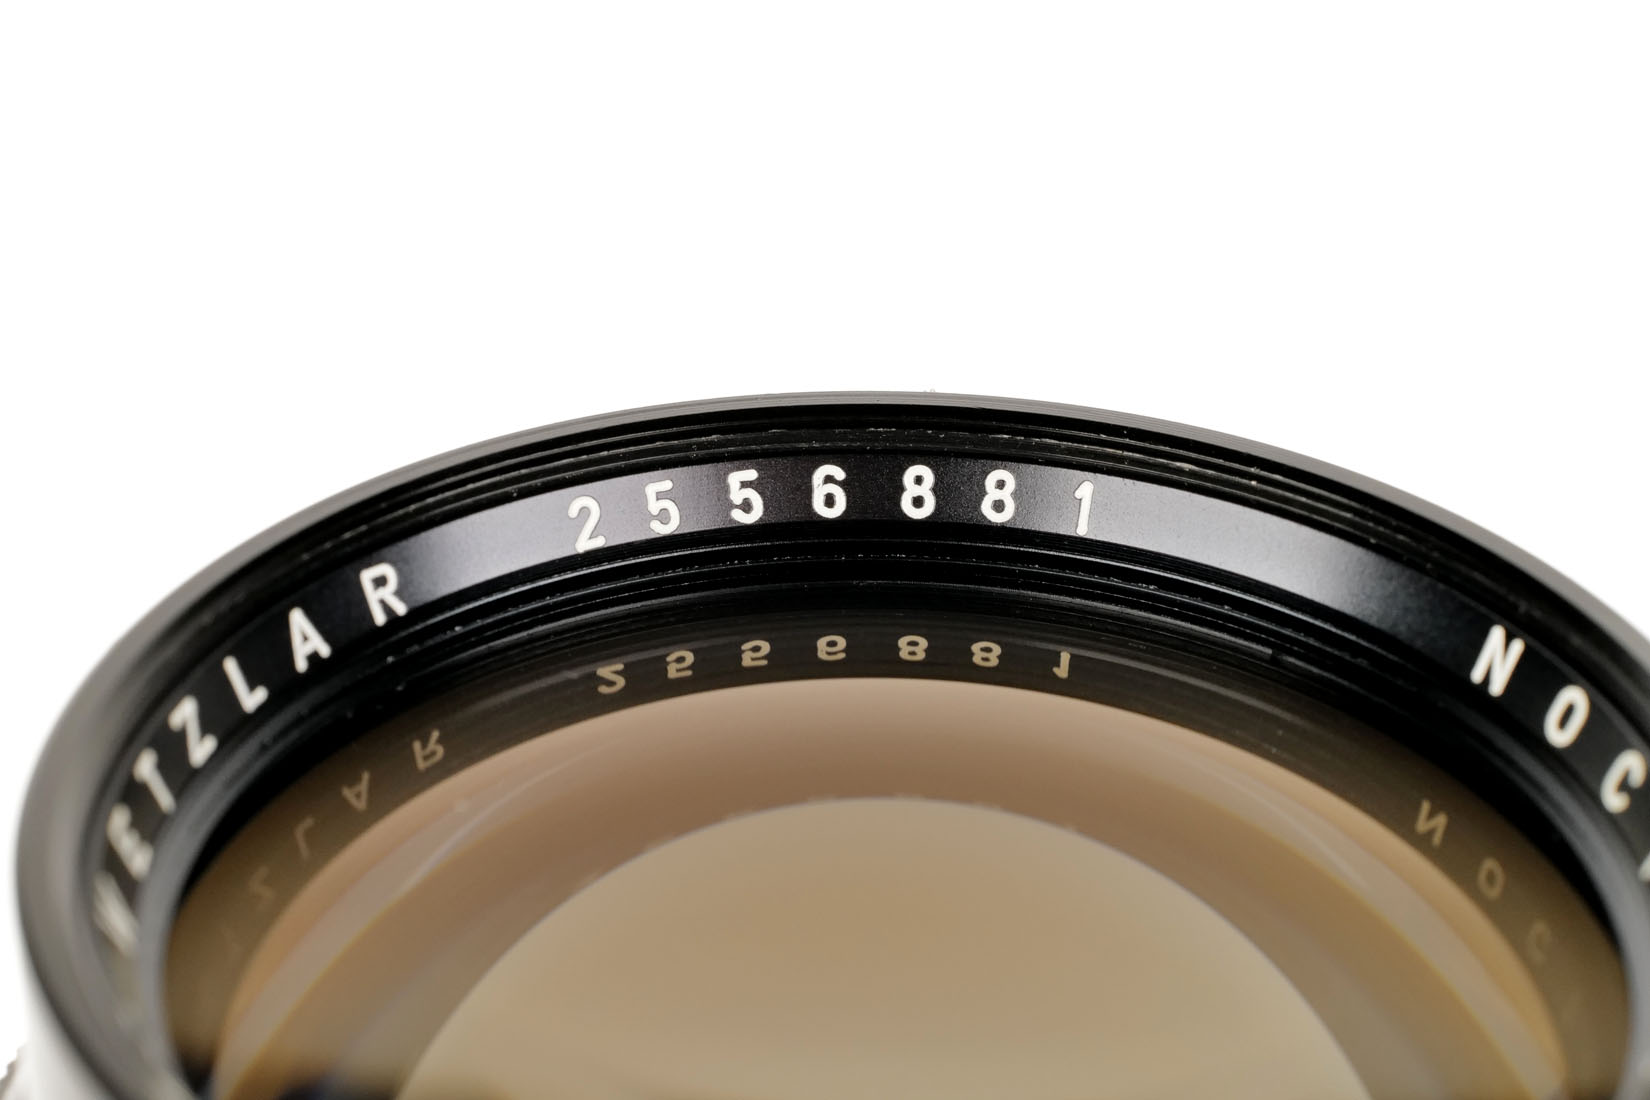 Leica NOCTILUX-M 1:1,2/50mm 11820